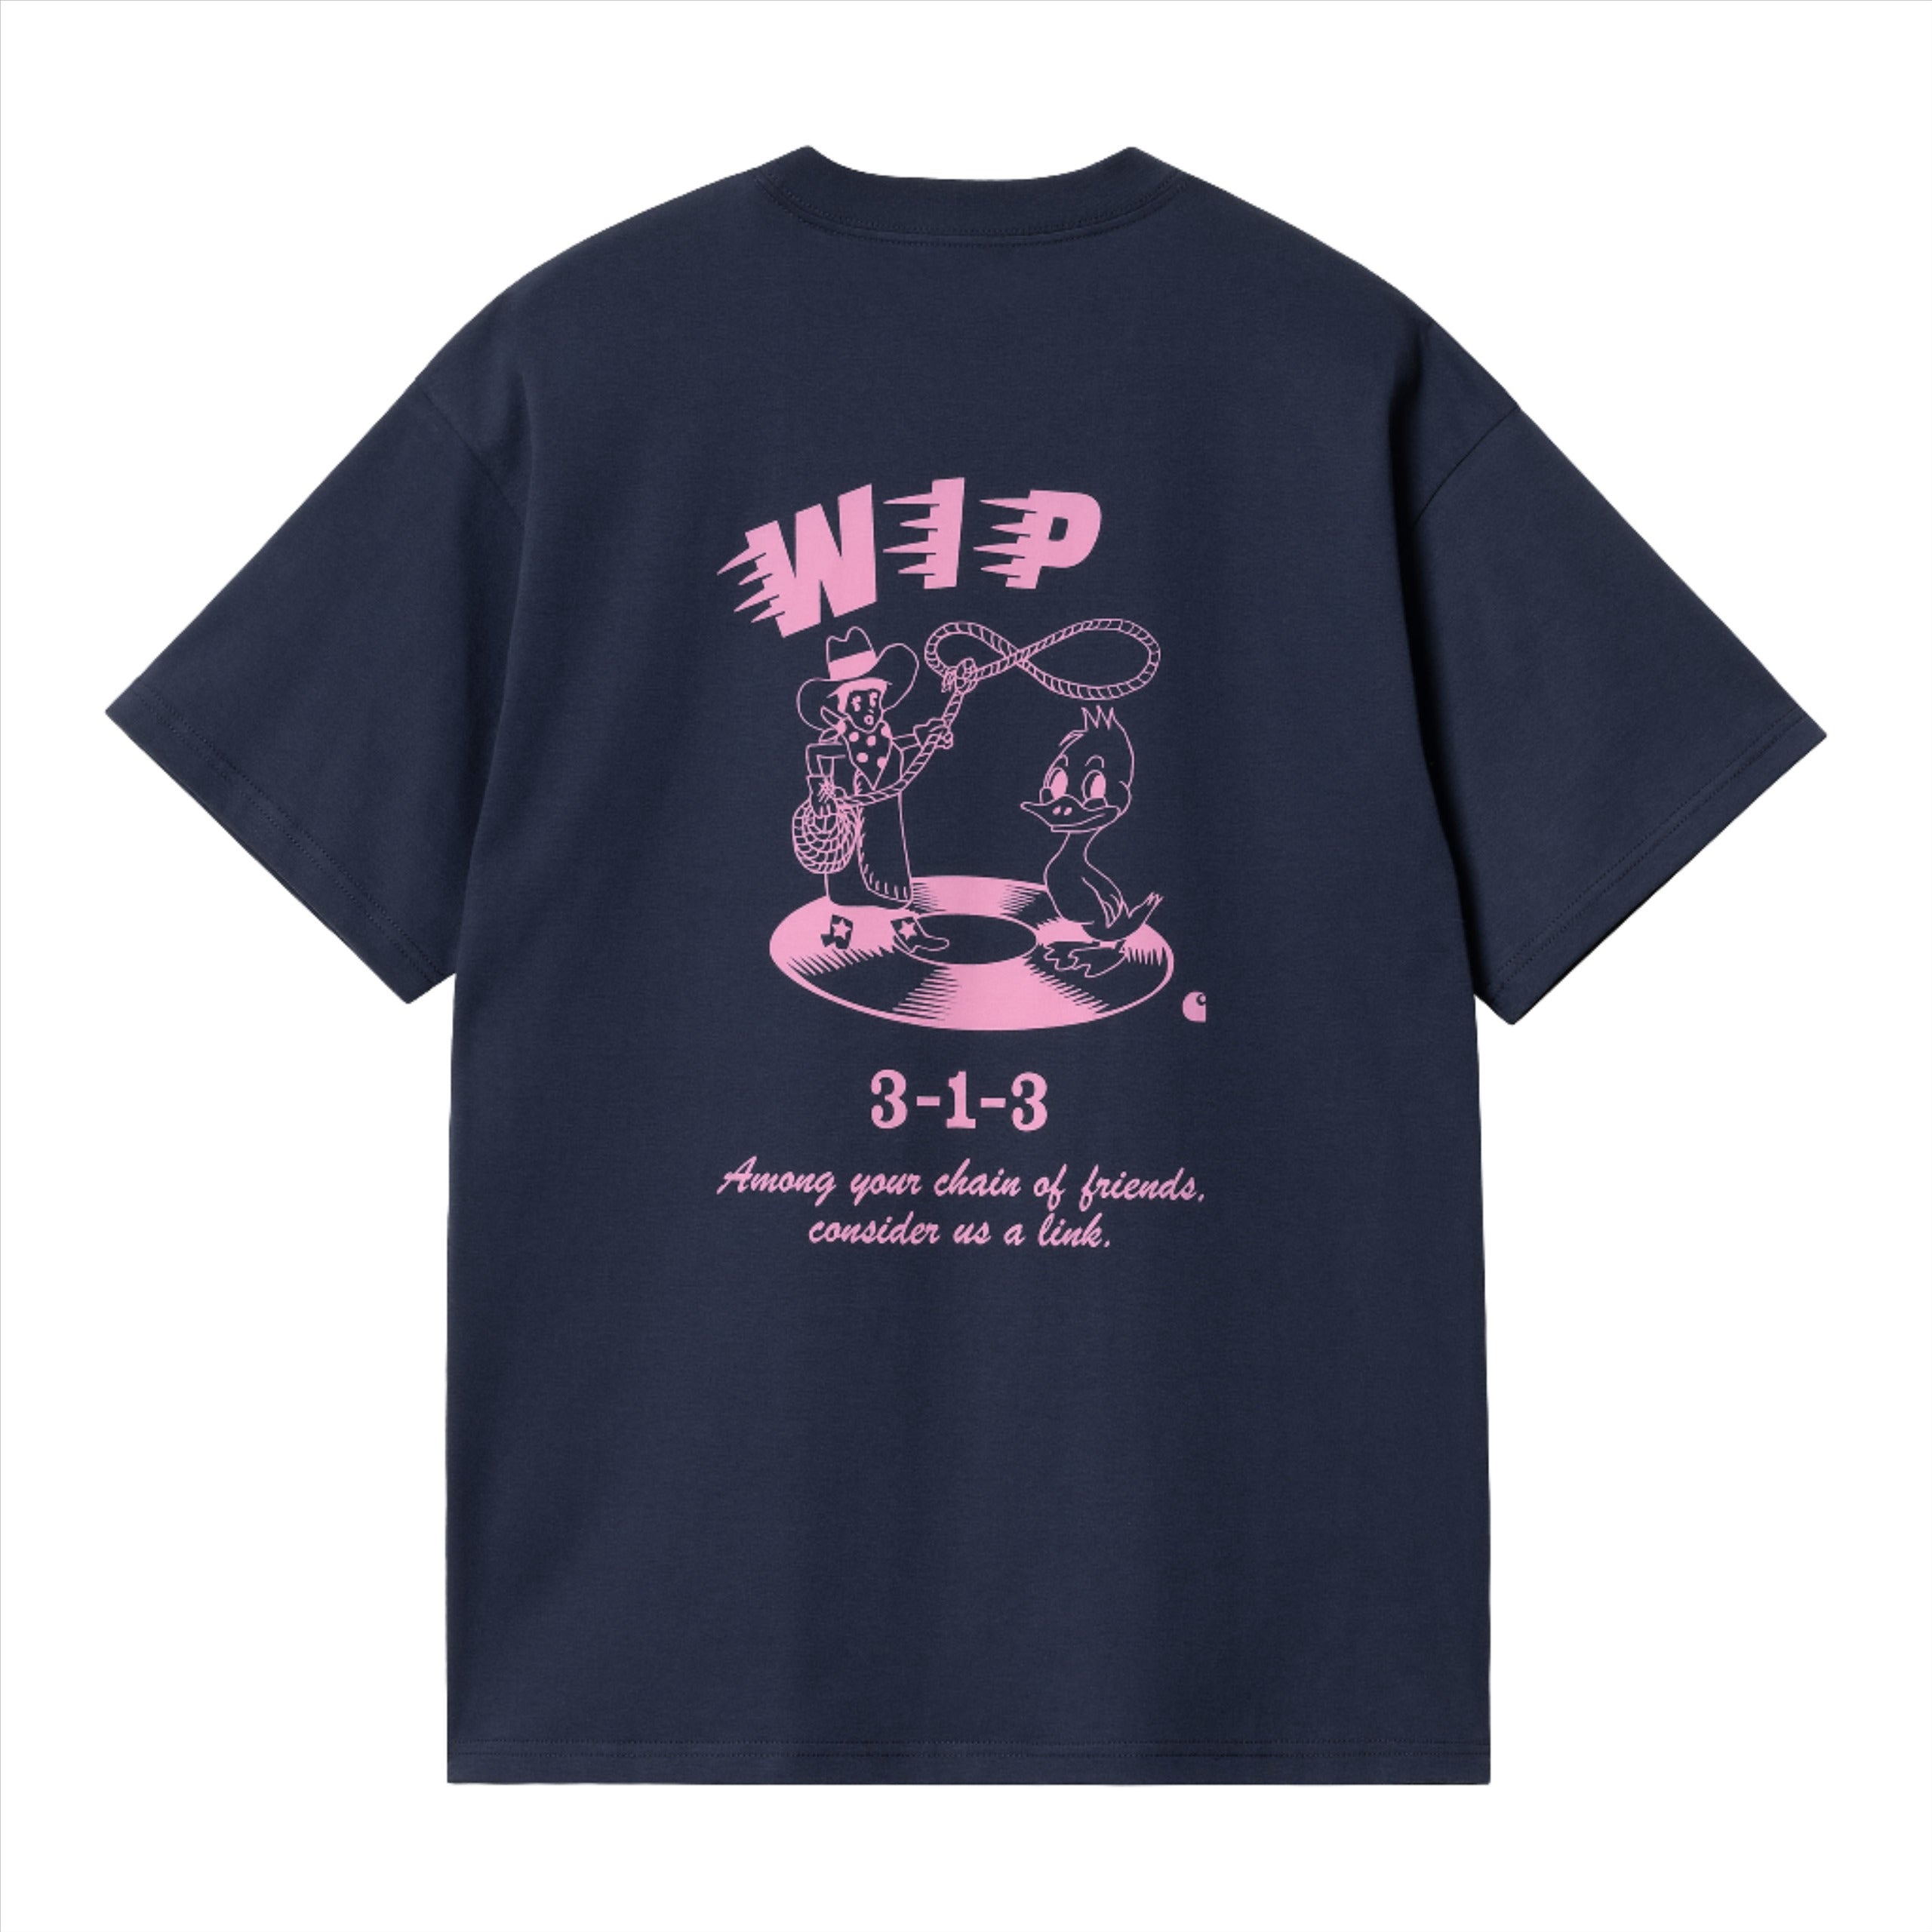 Friendship T-Shirt - Air Force Blue/Light Pink